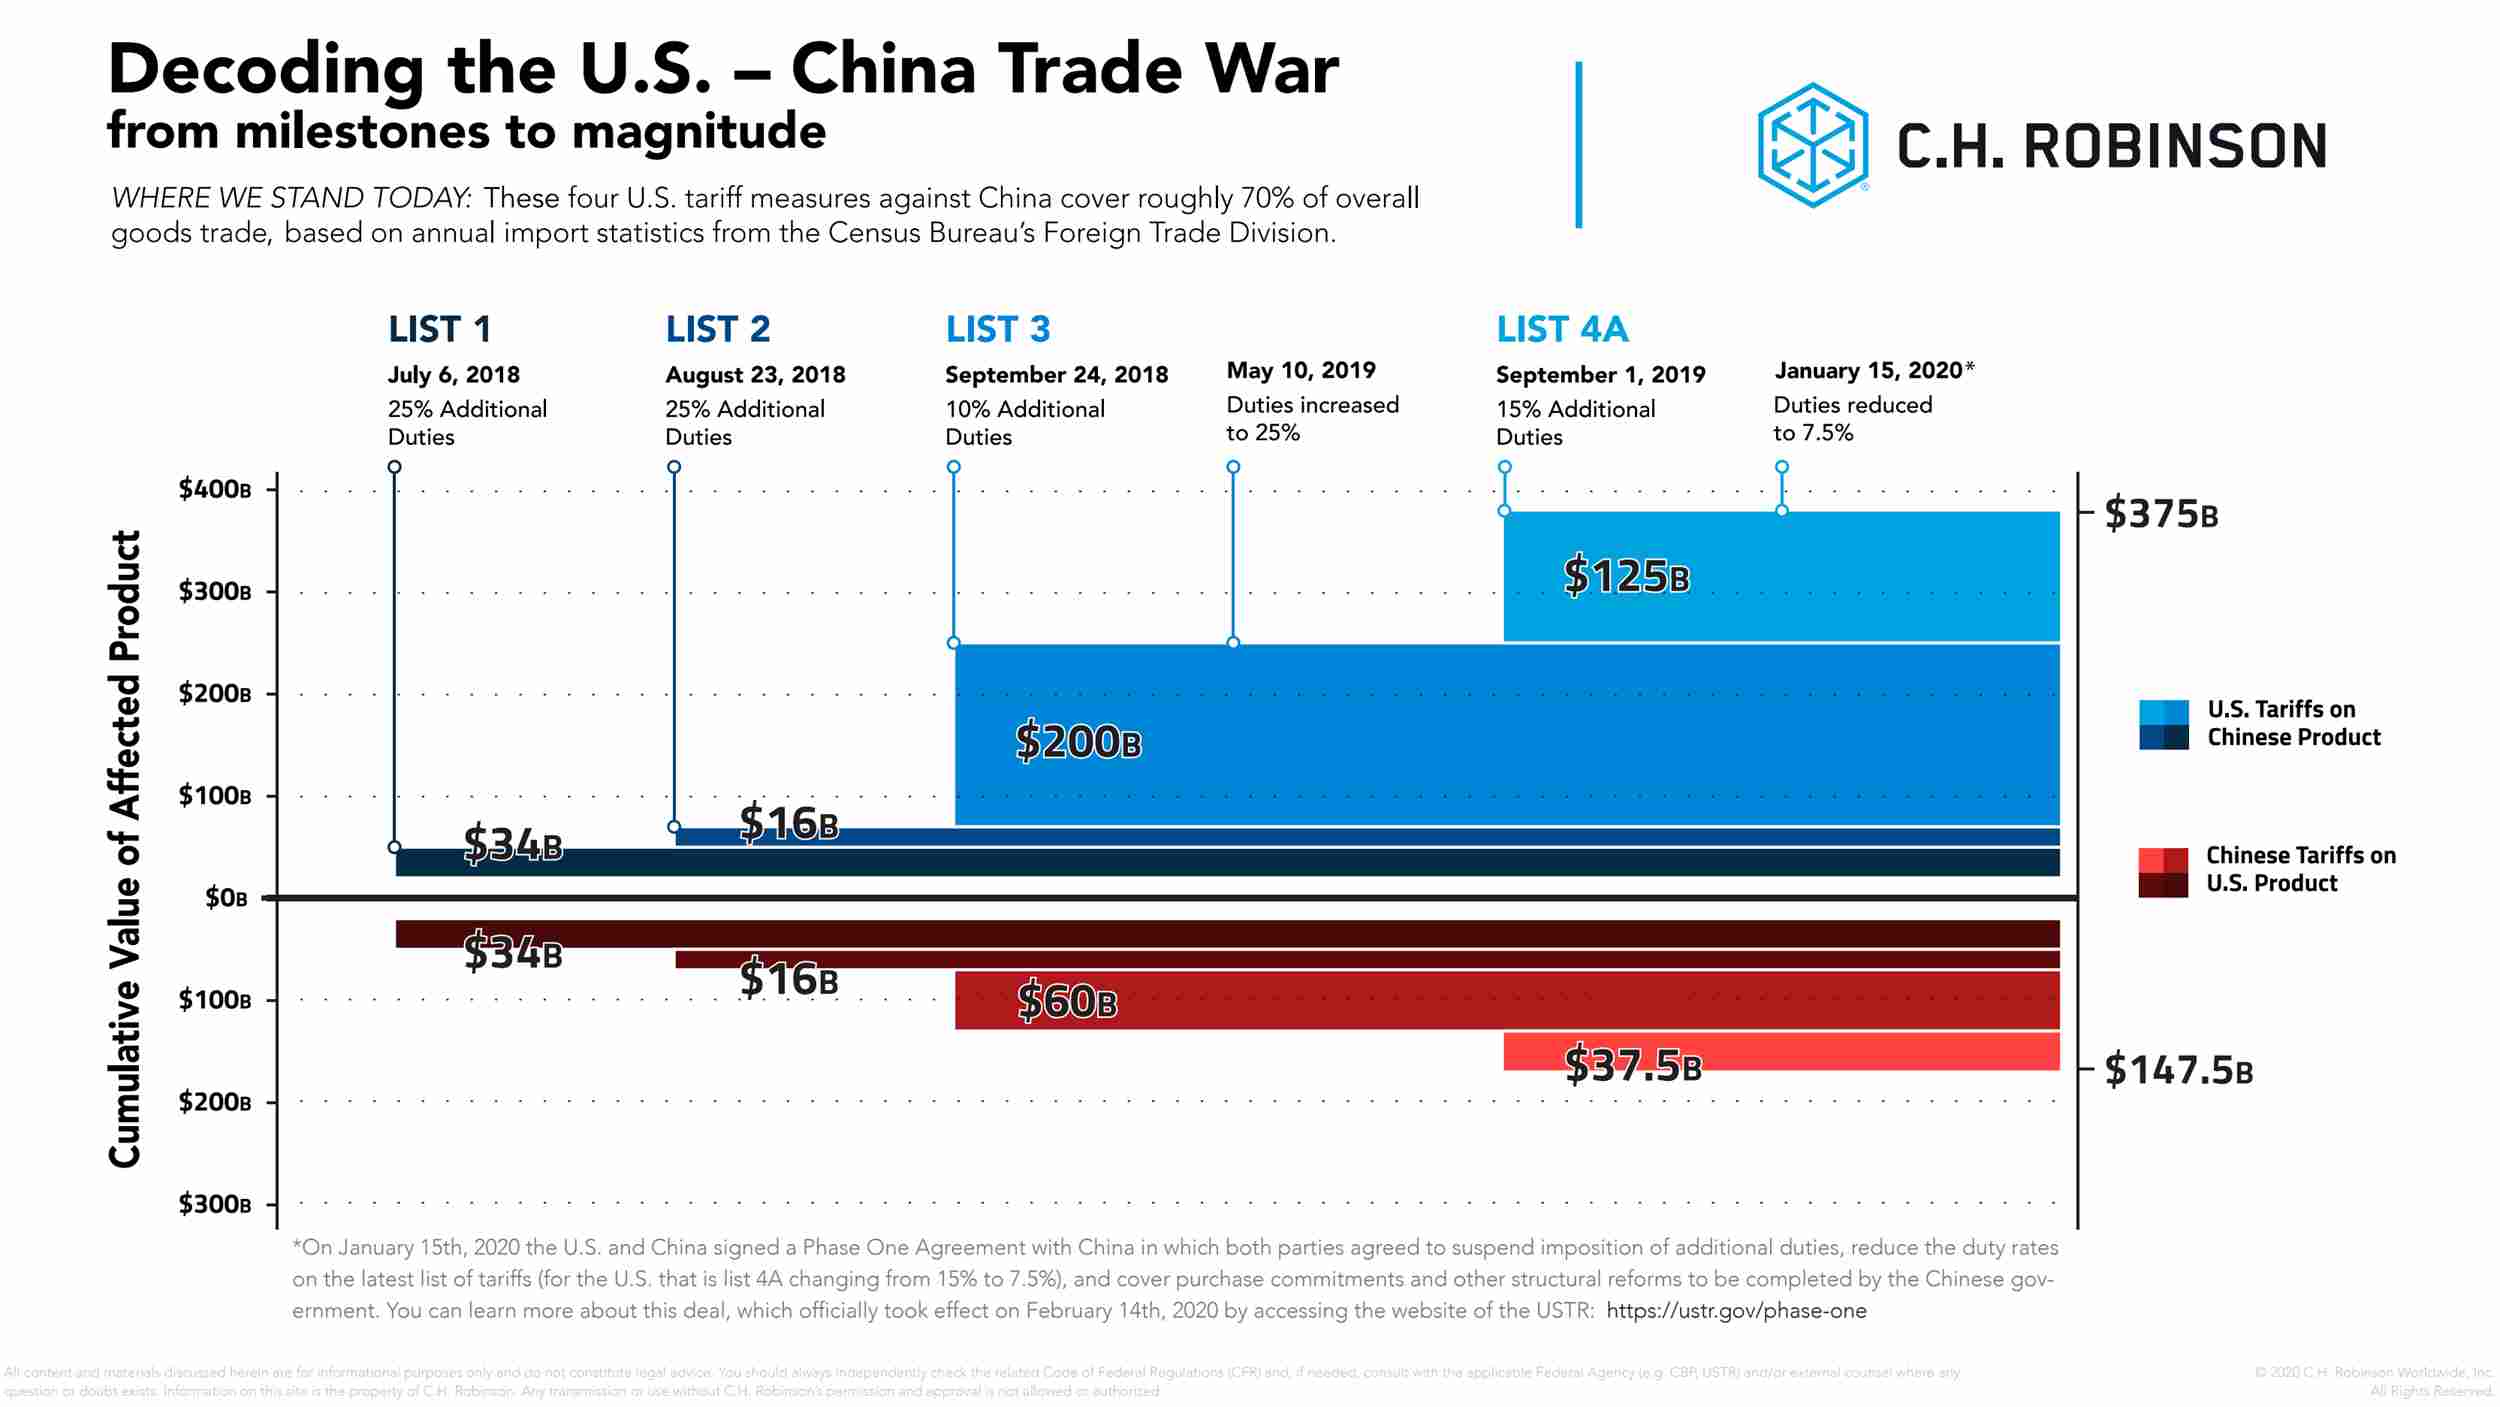 Gráfico de la decodificación de la guerra comercial entre Estados Unidos y China